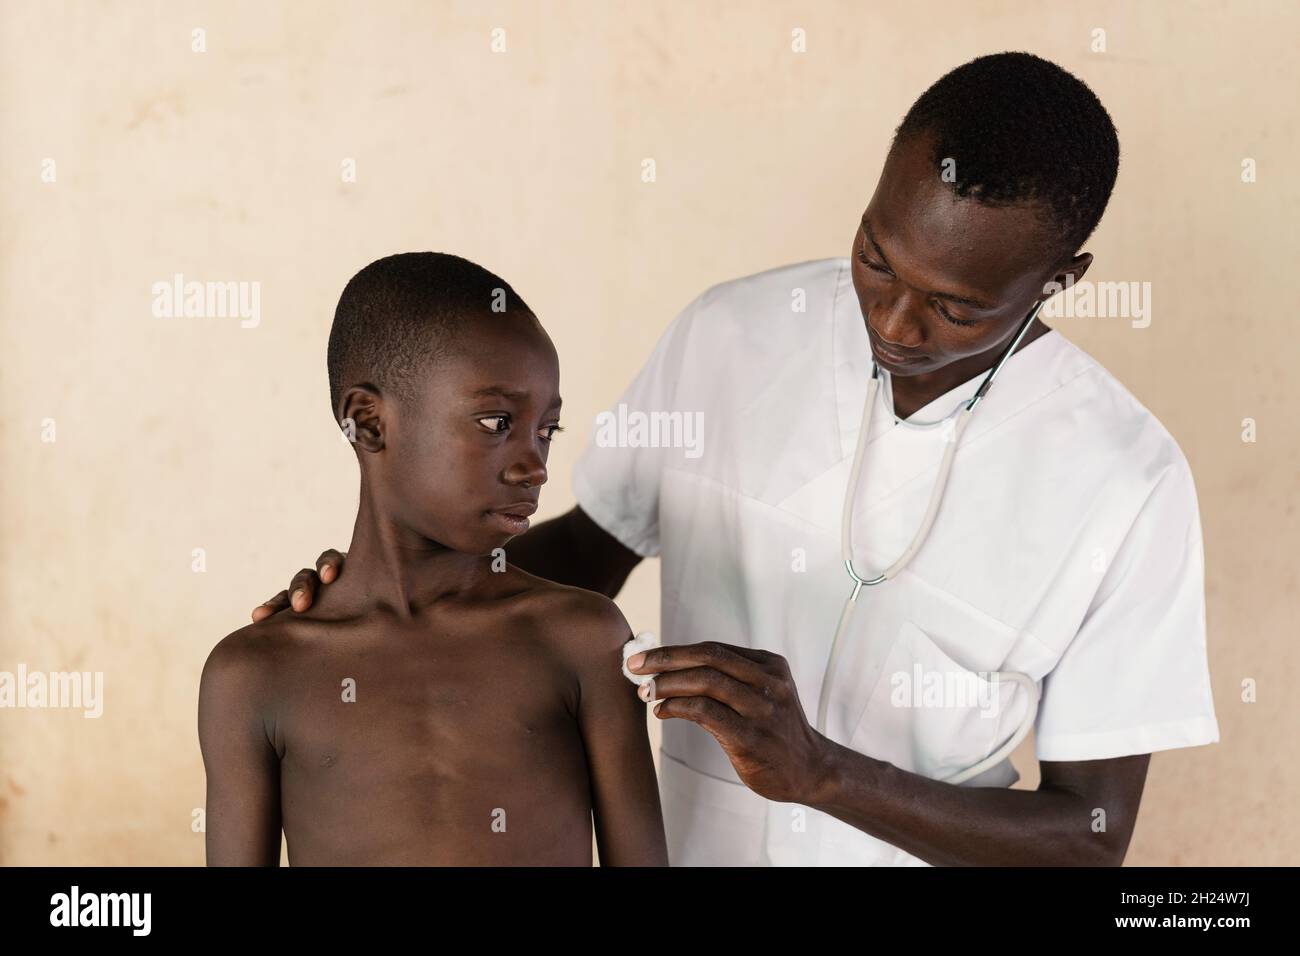 Dans cette image, un médecin désinfecte le site d'injection sur le bras d'un garçon noir après la vaccination contre le paludisme en Afrique de l'Ouest Banque D'Images